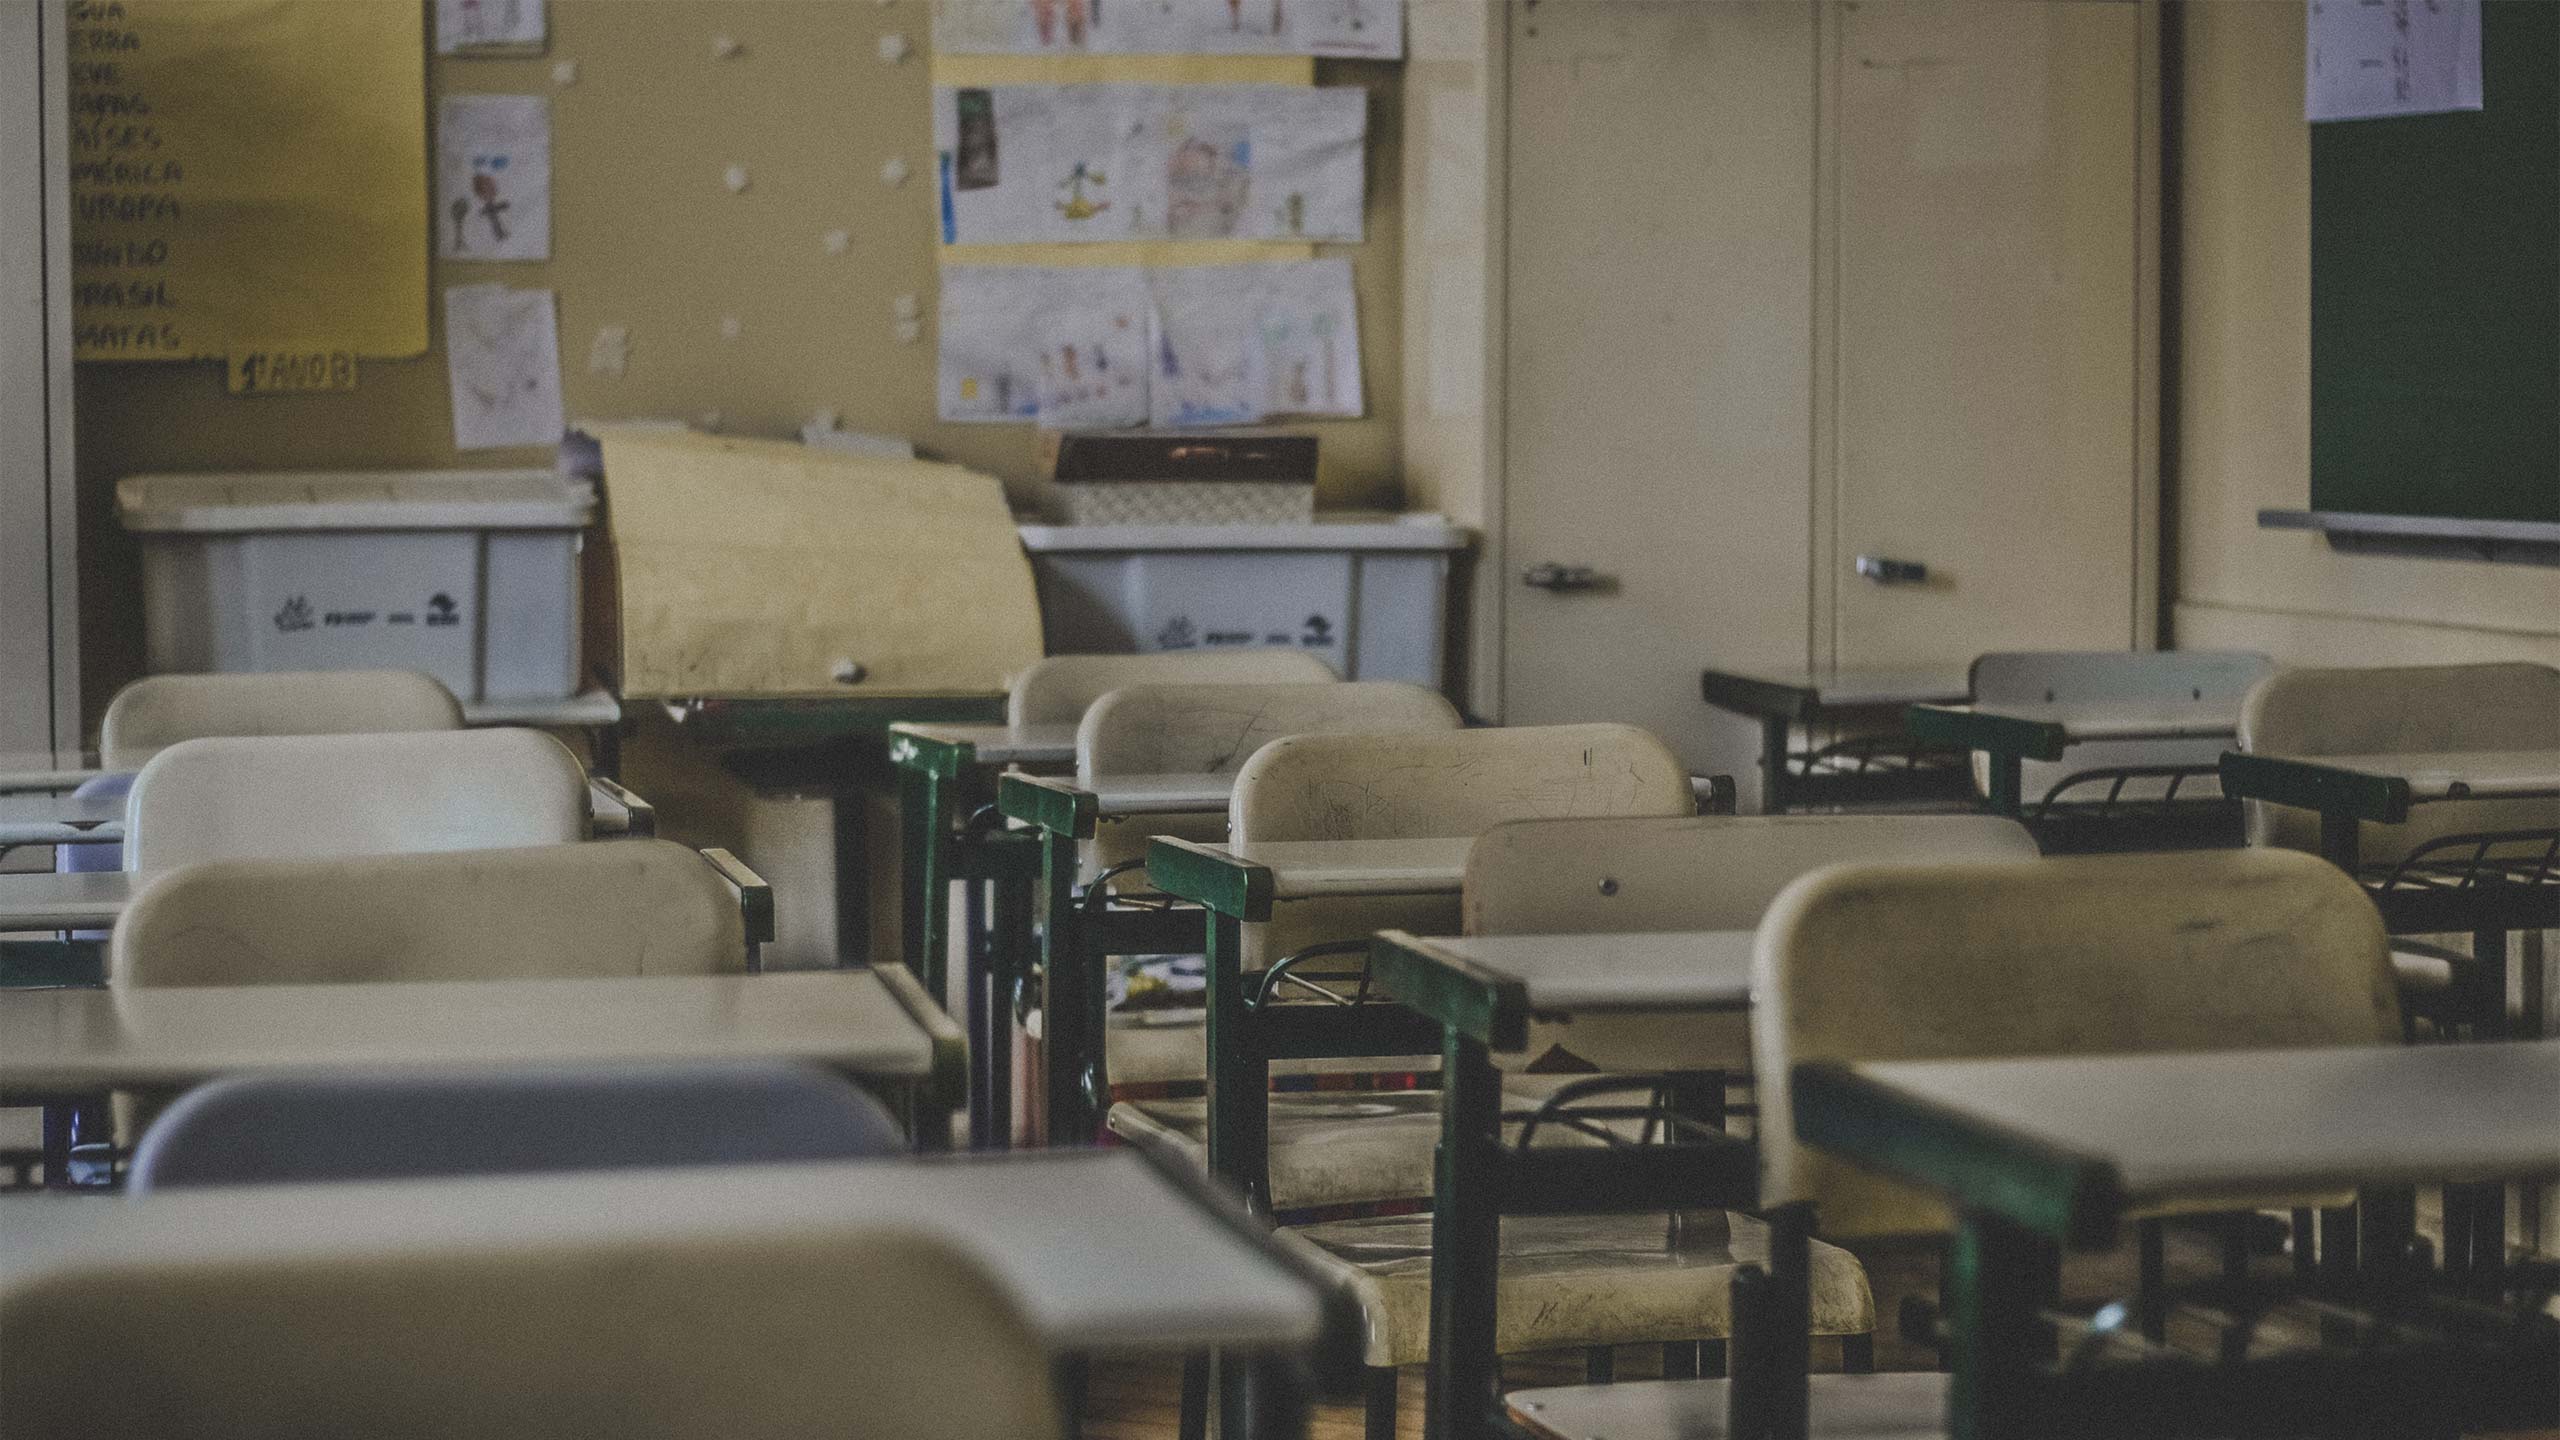 An empty classroom of desks